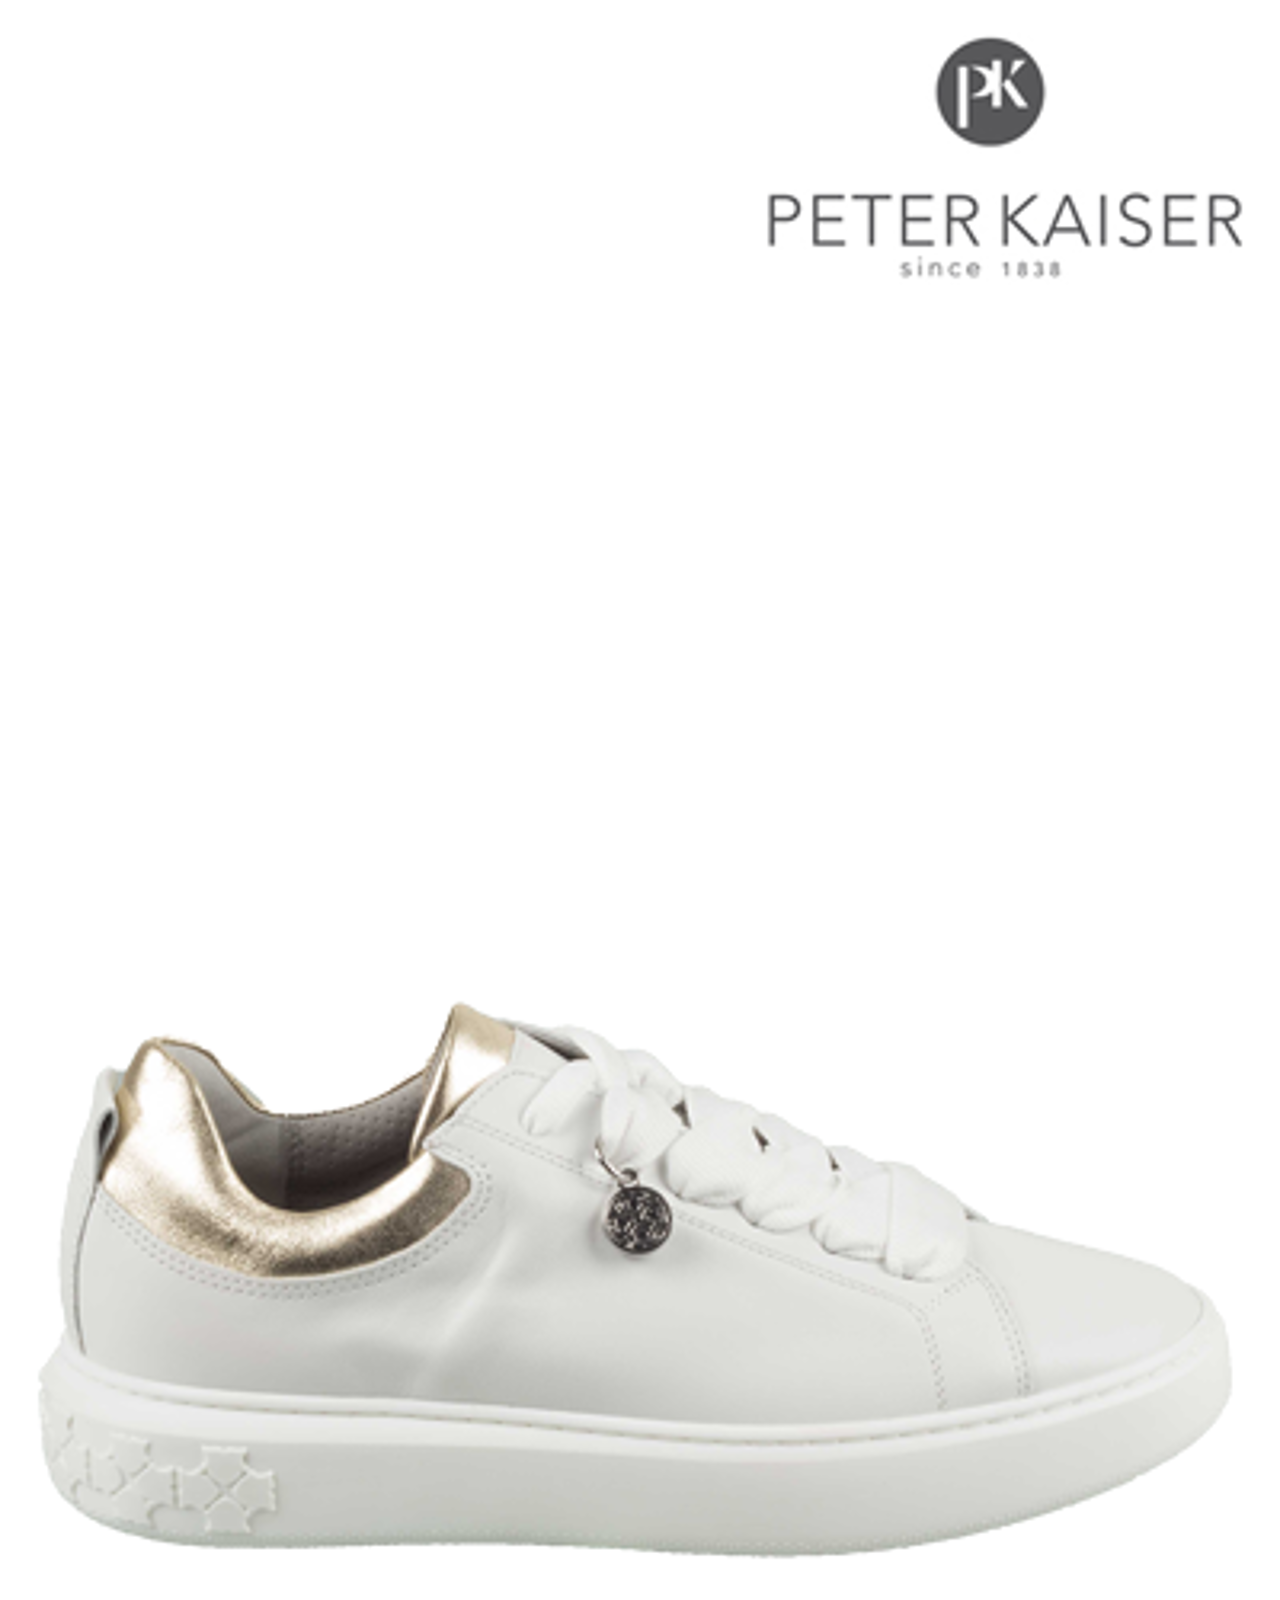 Peter Kaiser Damen Sneaker Flora 26517/348 Weiß Lackleder